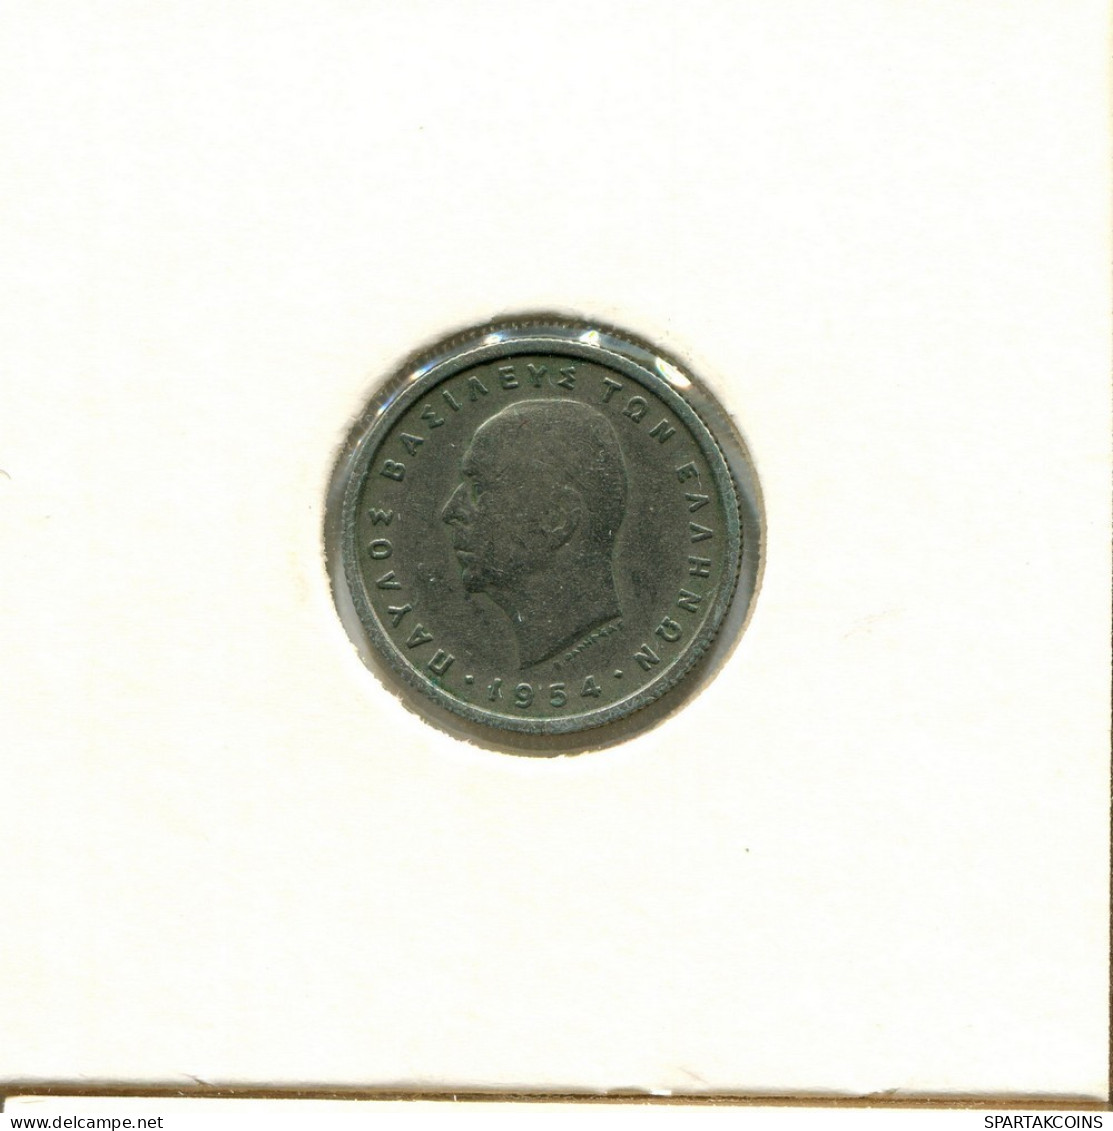 50 LEPTA 1954 GRIECHENLAND GREECE Münze #AY302.D.A - Griechenland